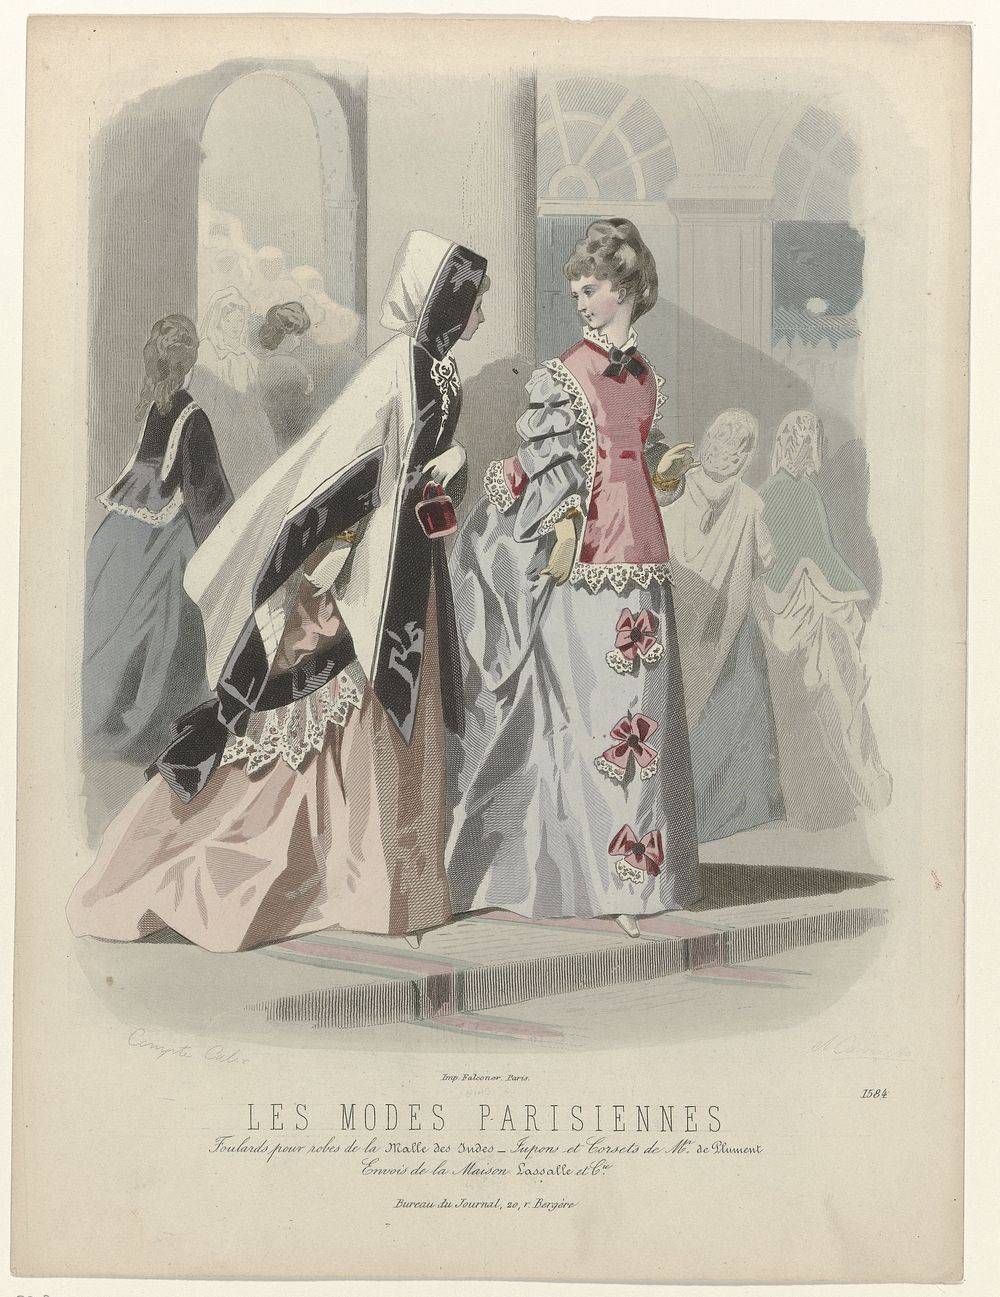 Les Modes Parisiennes, 1871-1872, No. 1584: Foulards pour robes (...) (1871 - 1872) by Carrache, François Claudius Compte…